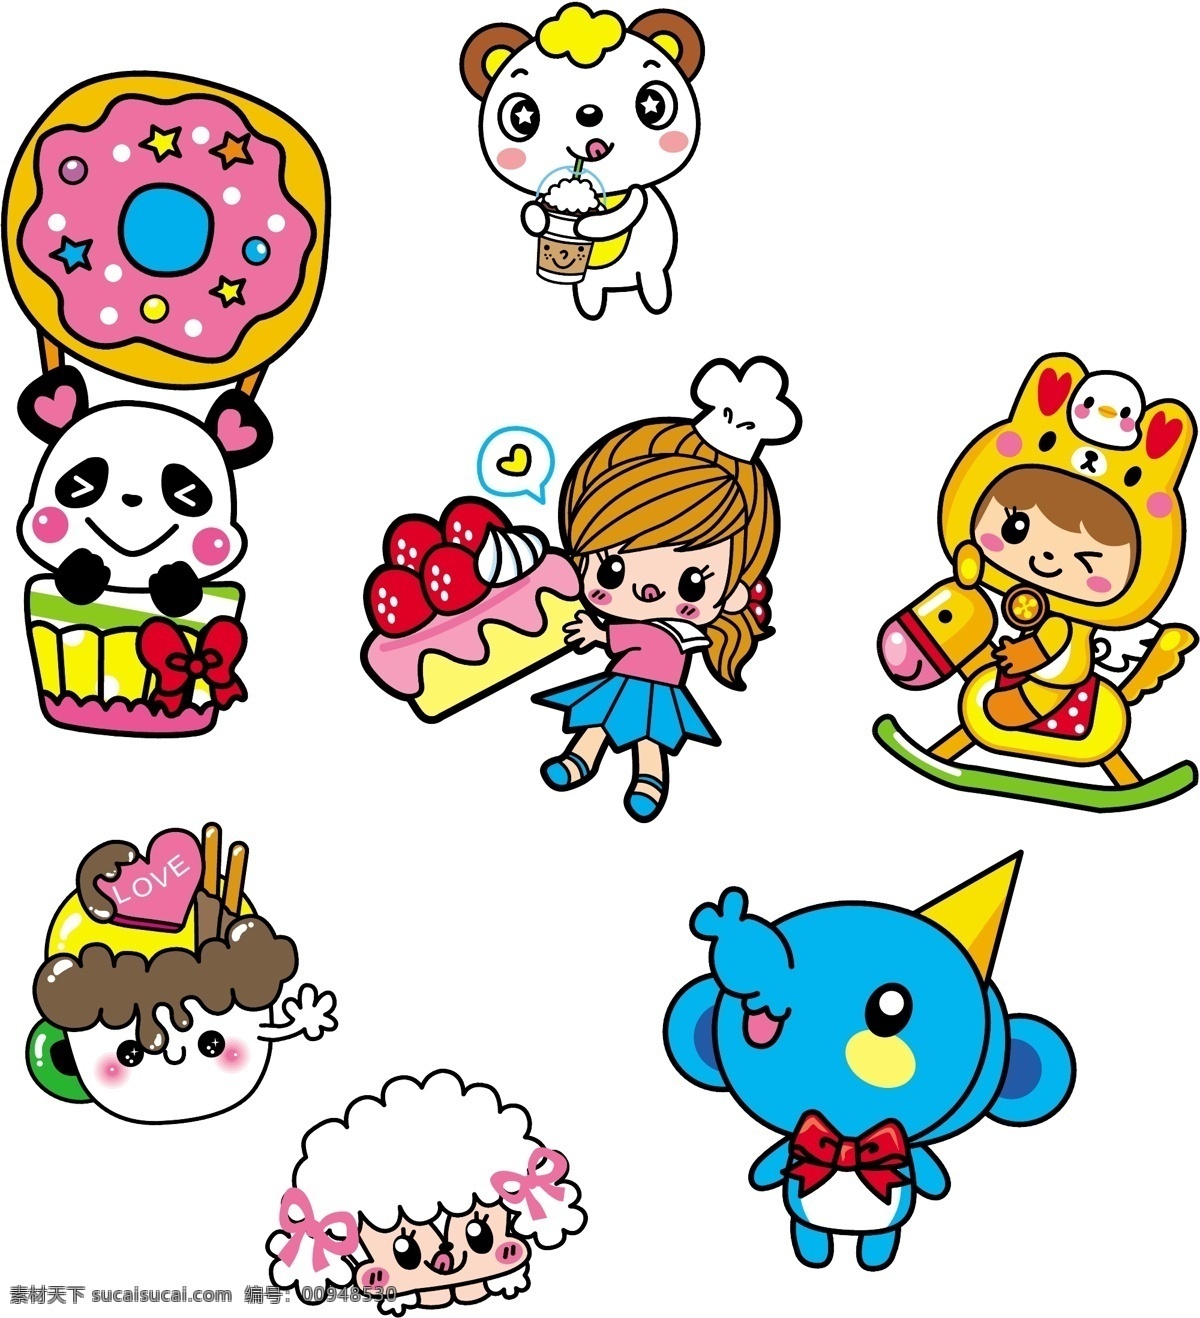 韩国卡通 卡通女孩 抱蛋糕的女孩 卡通小象 卡通小狗 骑木马 卡通熊猫 卡通热气球 儿童幼儿 矢量人物 矢量